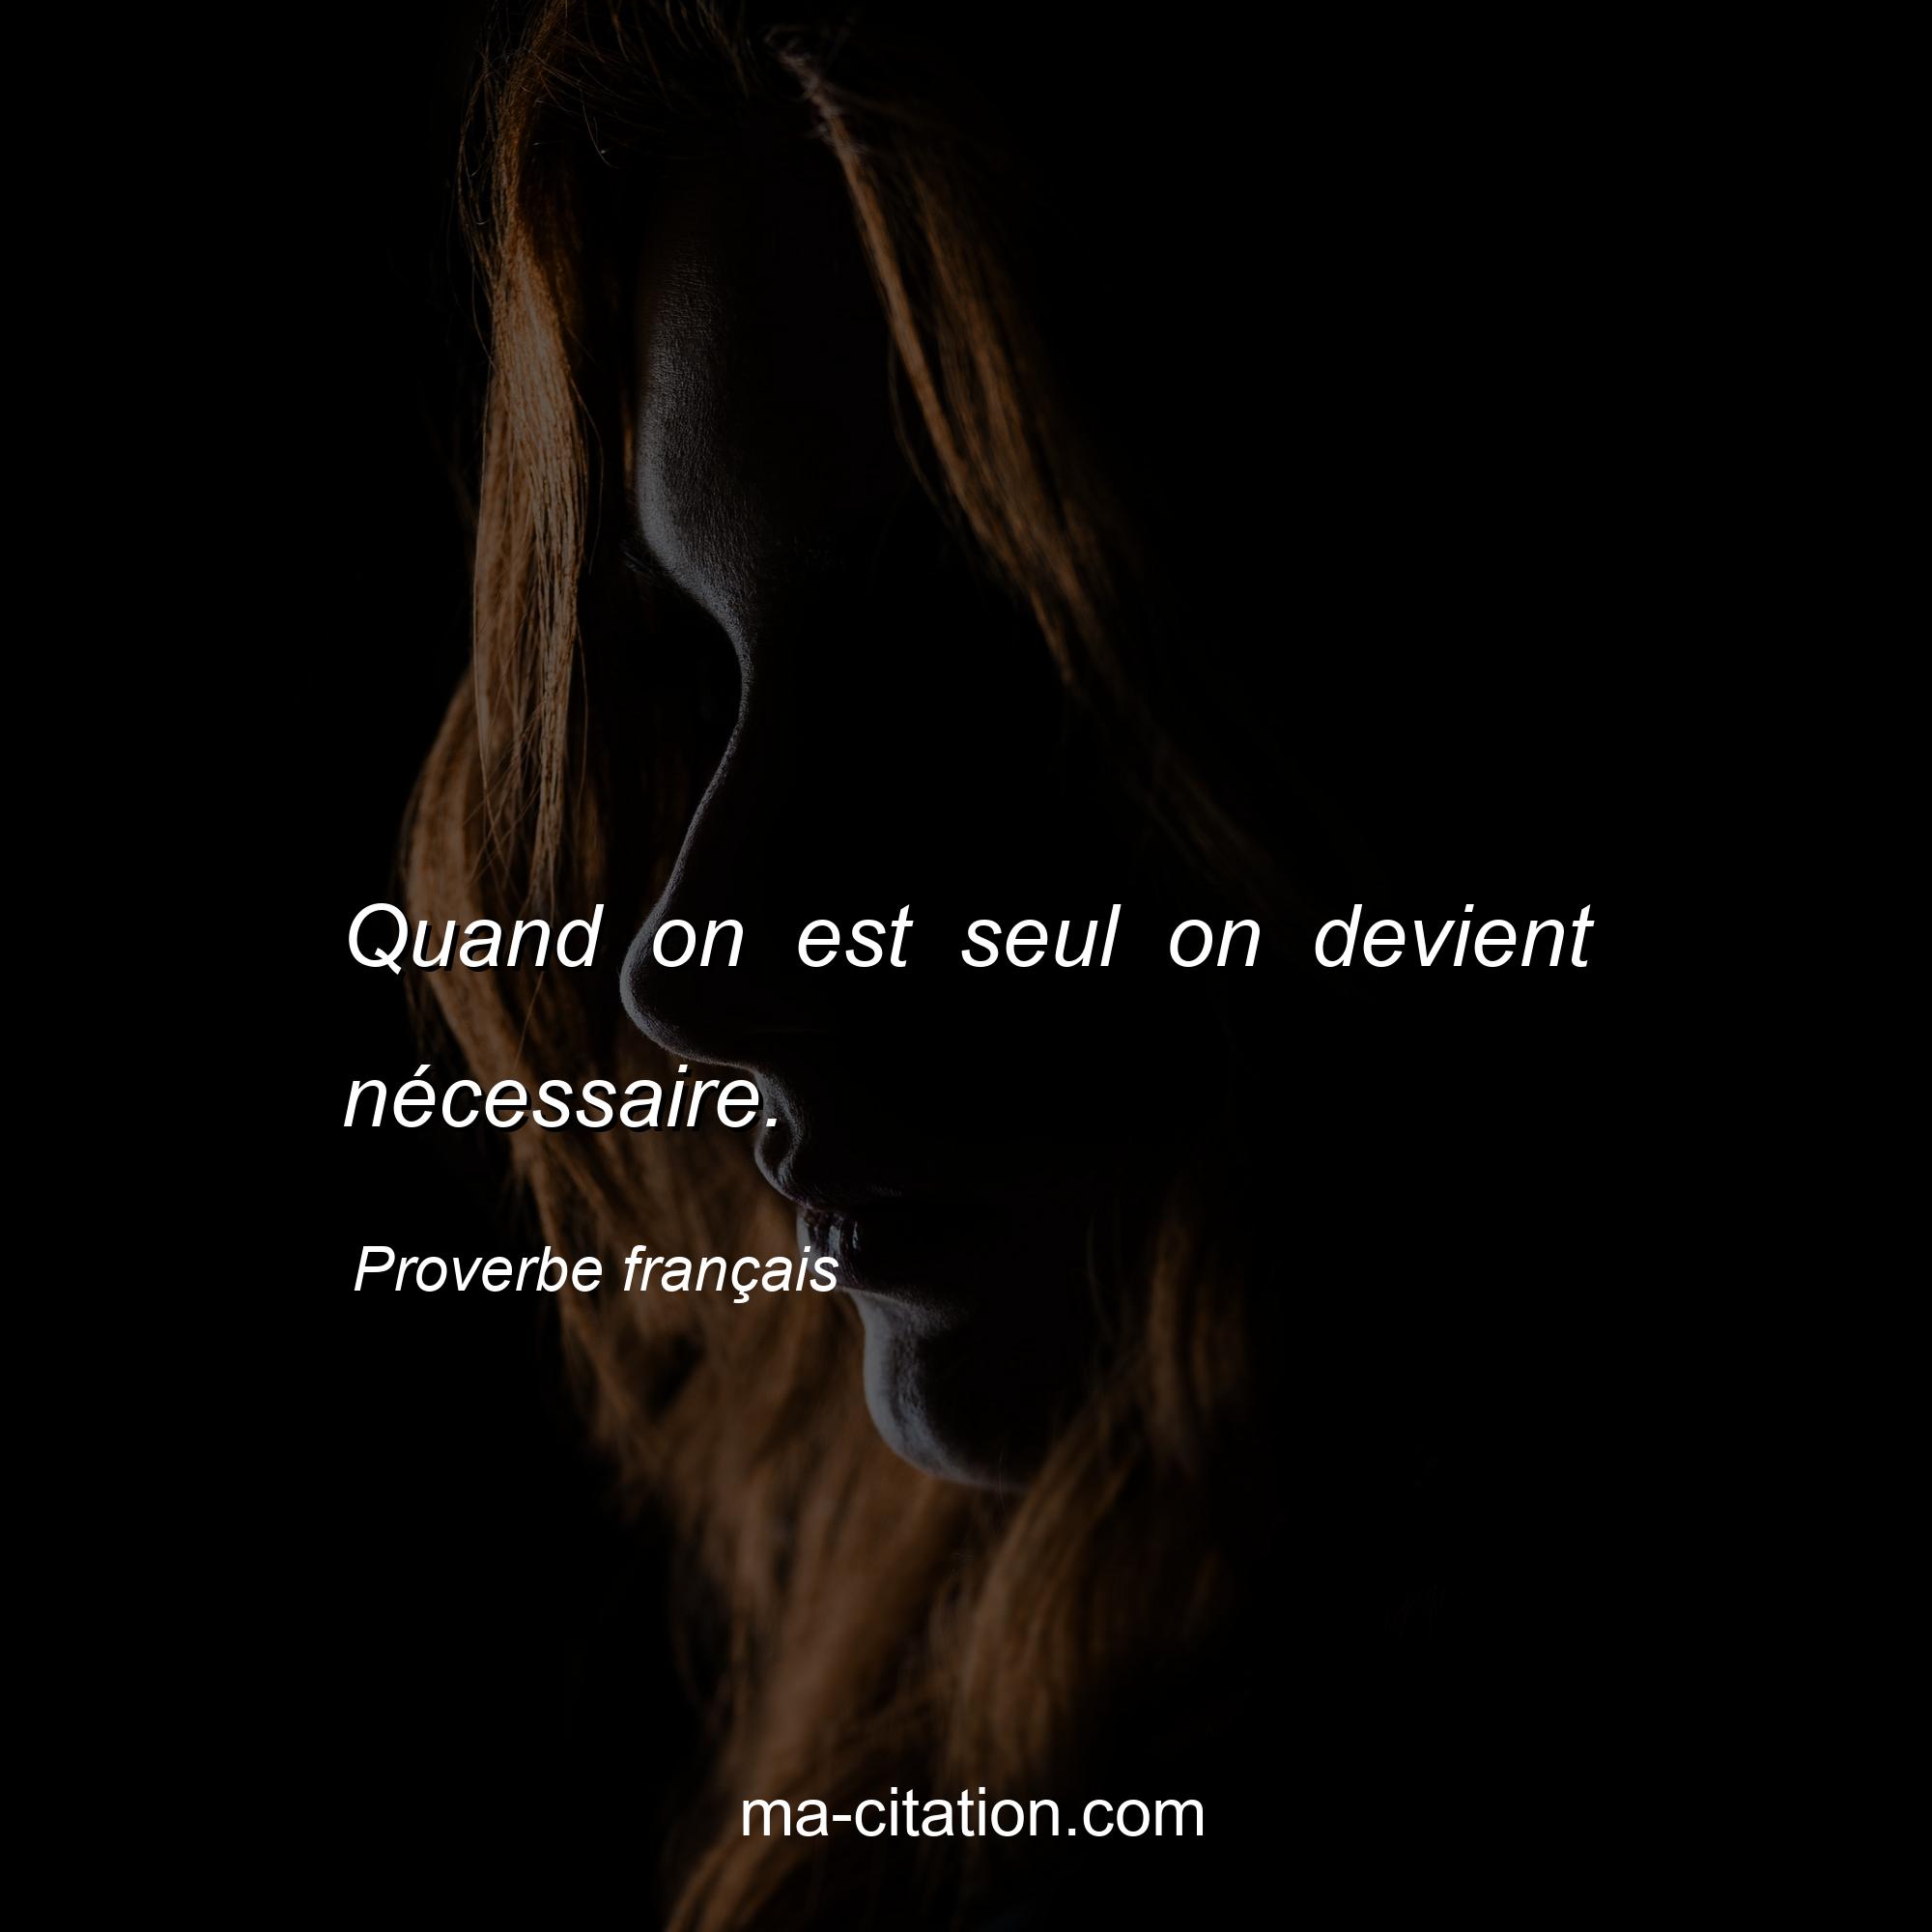 Proverbe français : Quand on est seul on devient nécessaire.